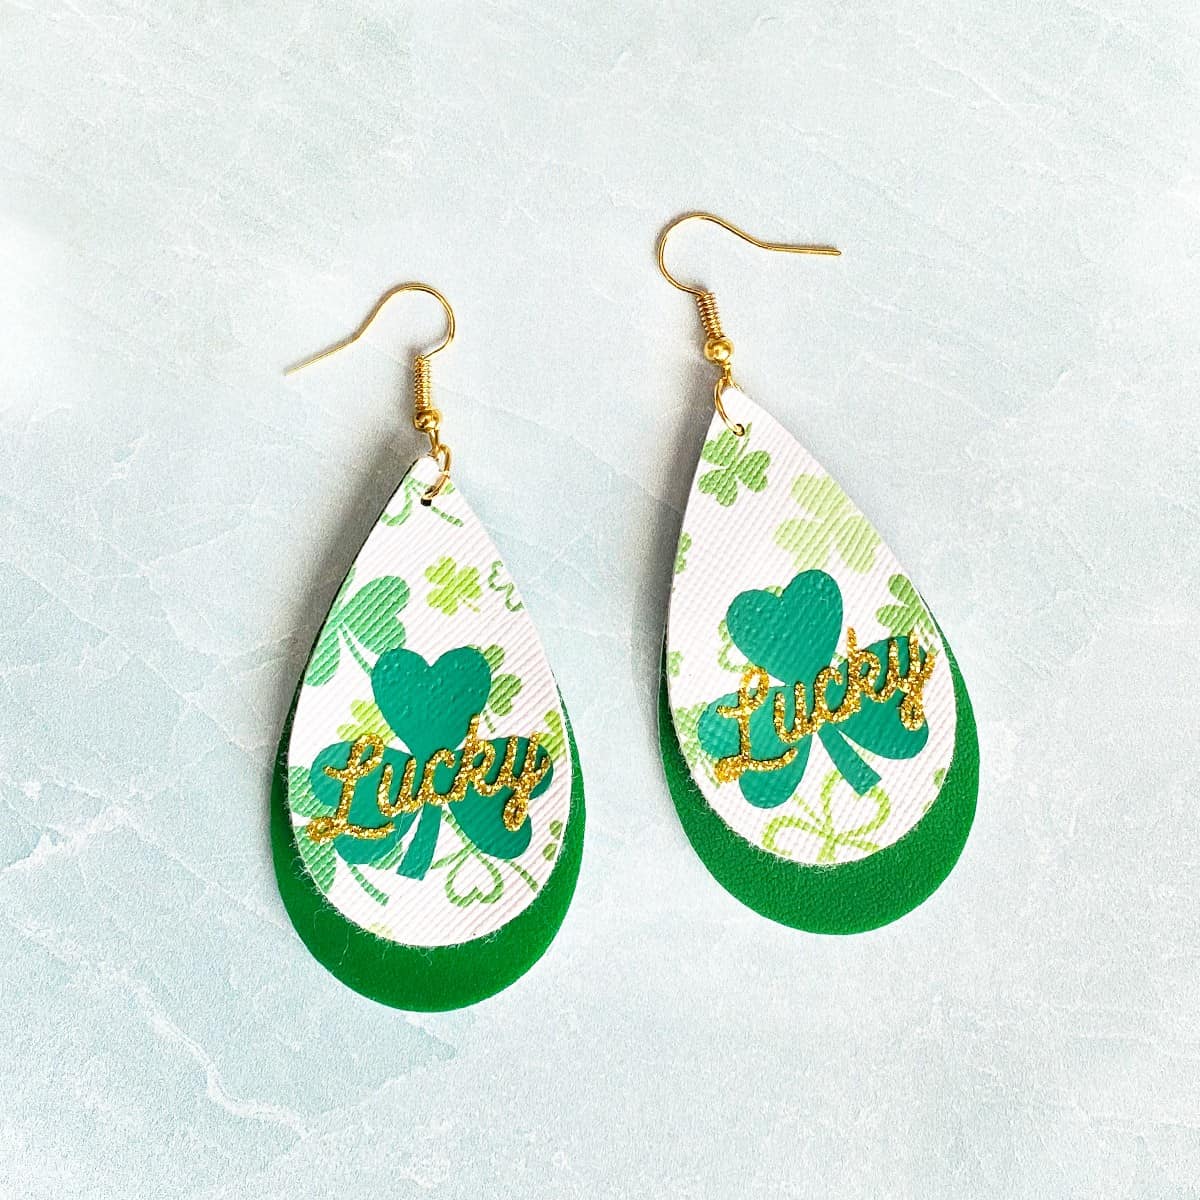 Cricut St. Patrick’s Day Earrings